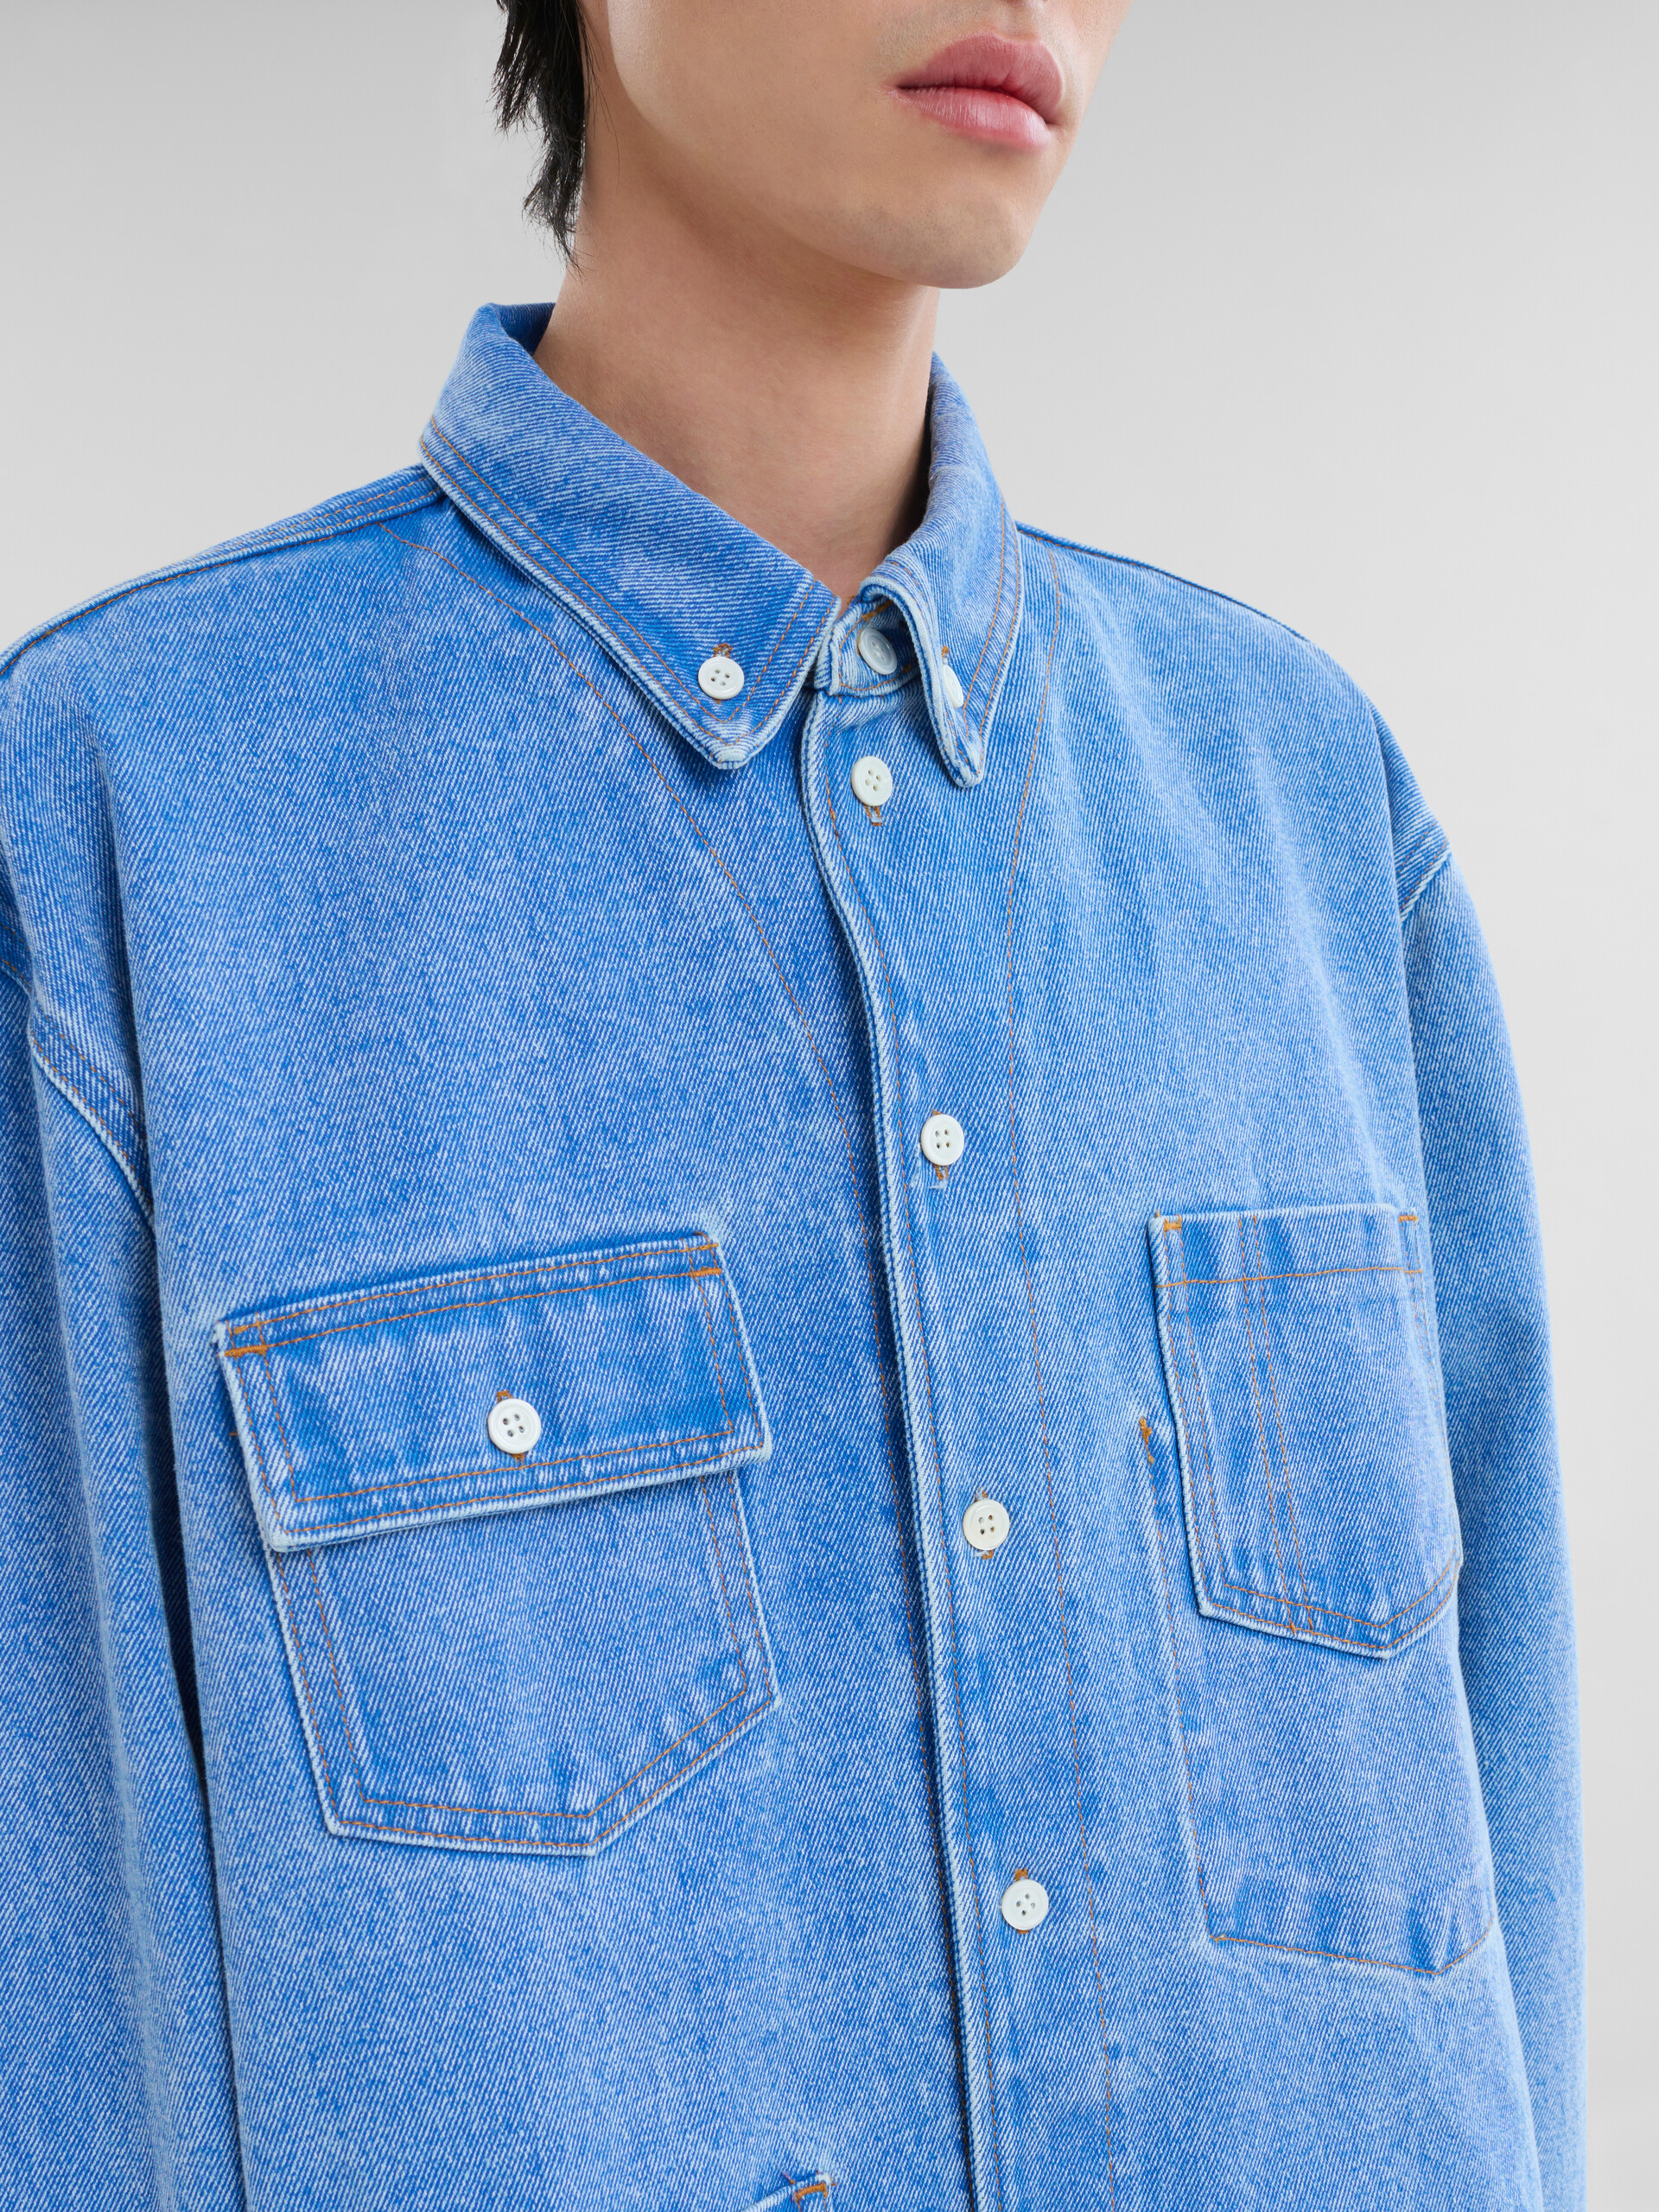 Overshirt in denim biologico blu con tasche - Camicie - Image 4